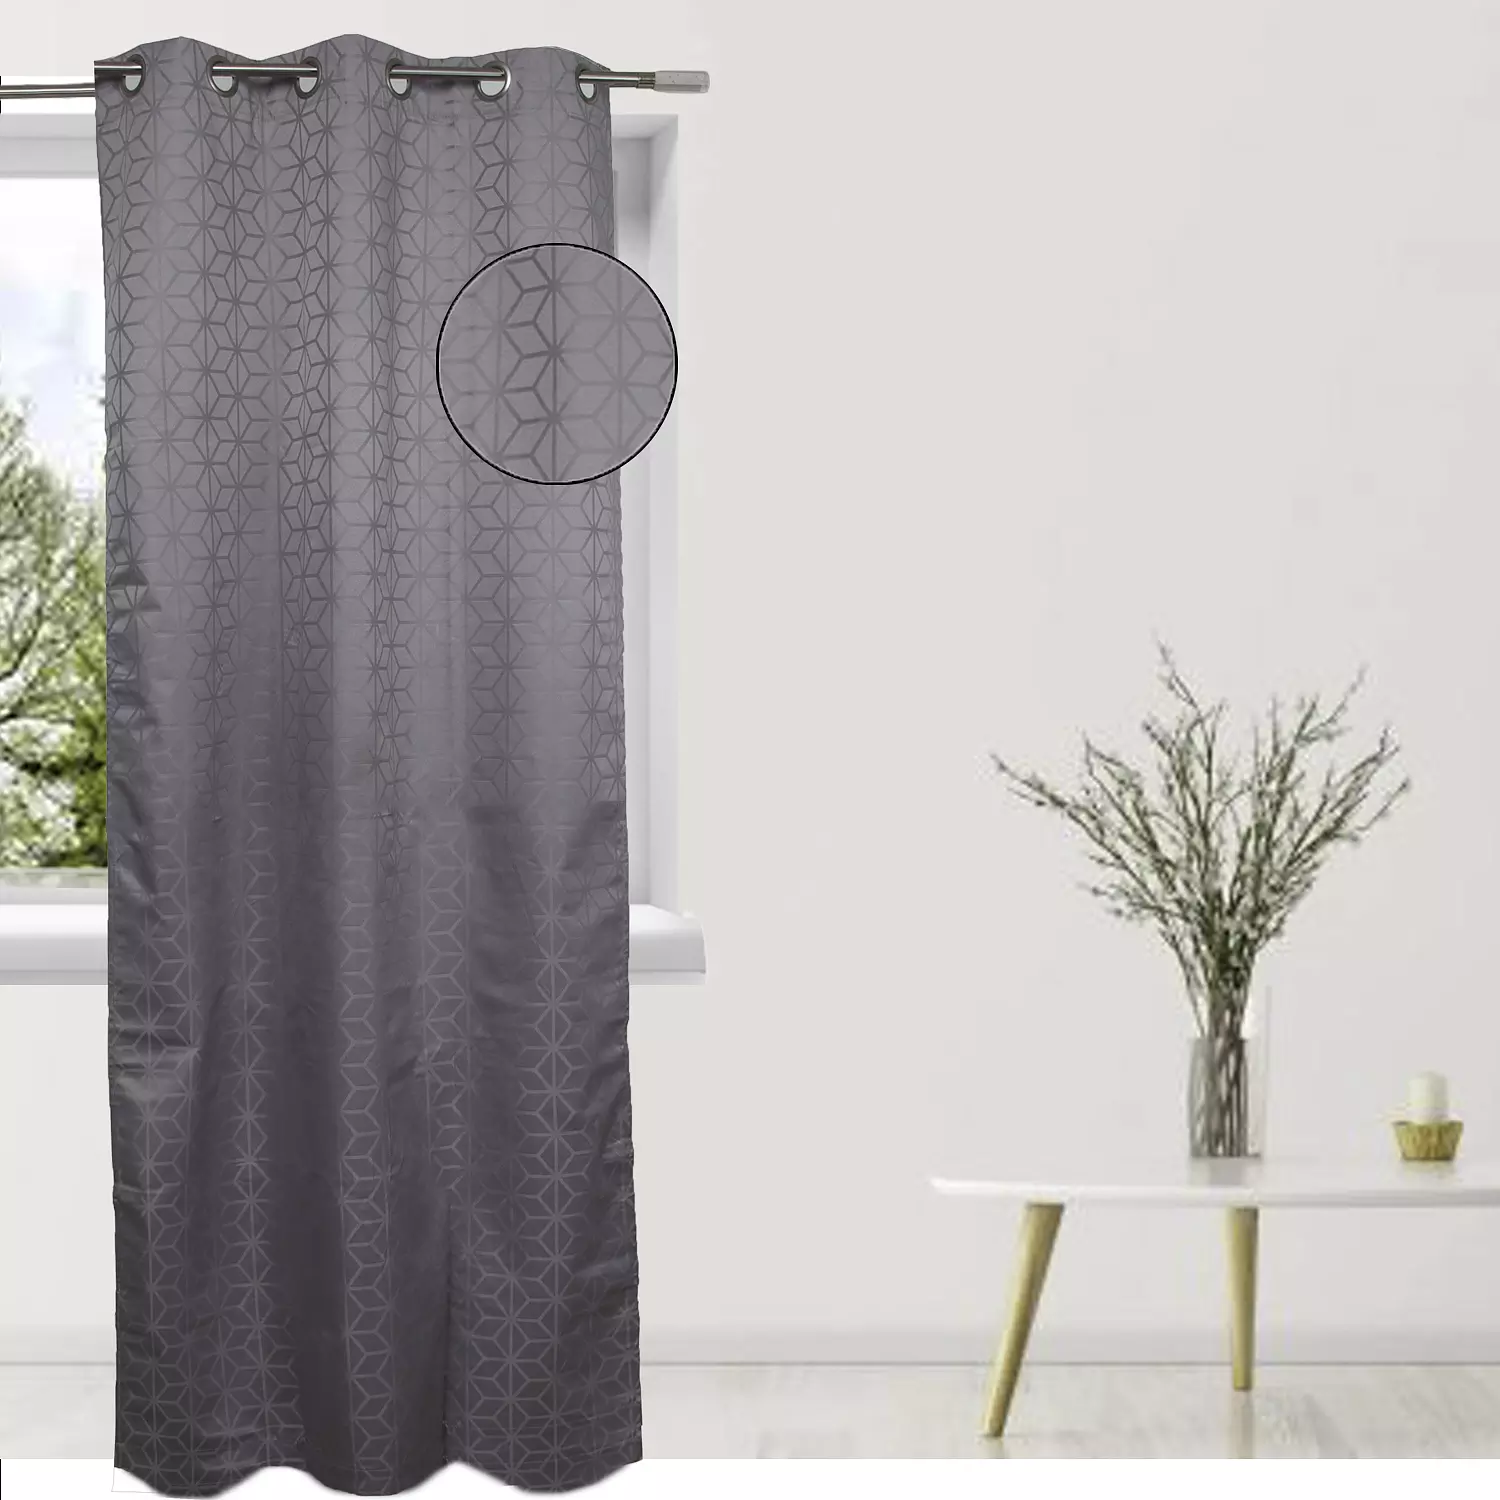 Geo room darkening curtain with metal grommets, 38"x84", dark grey